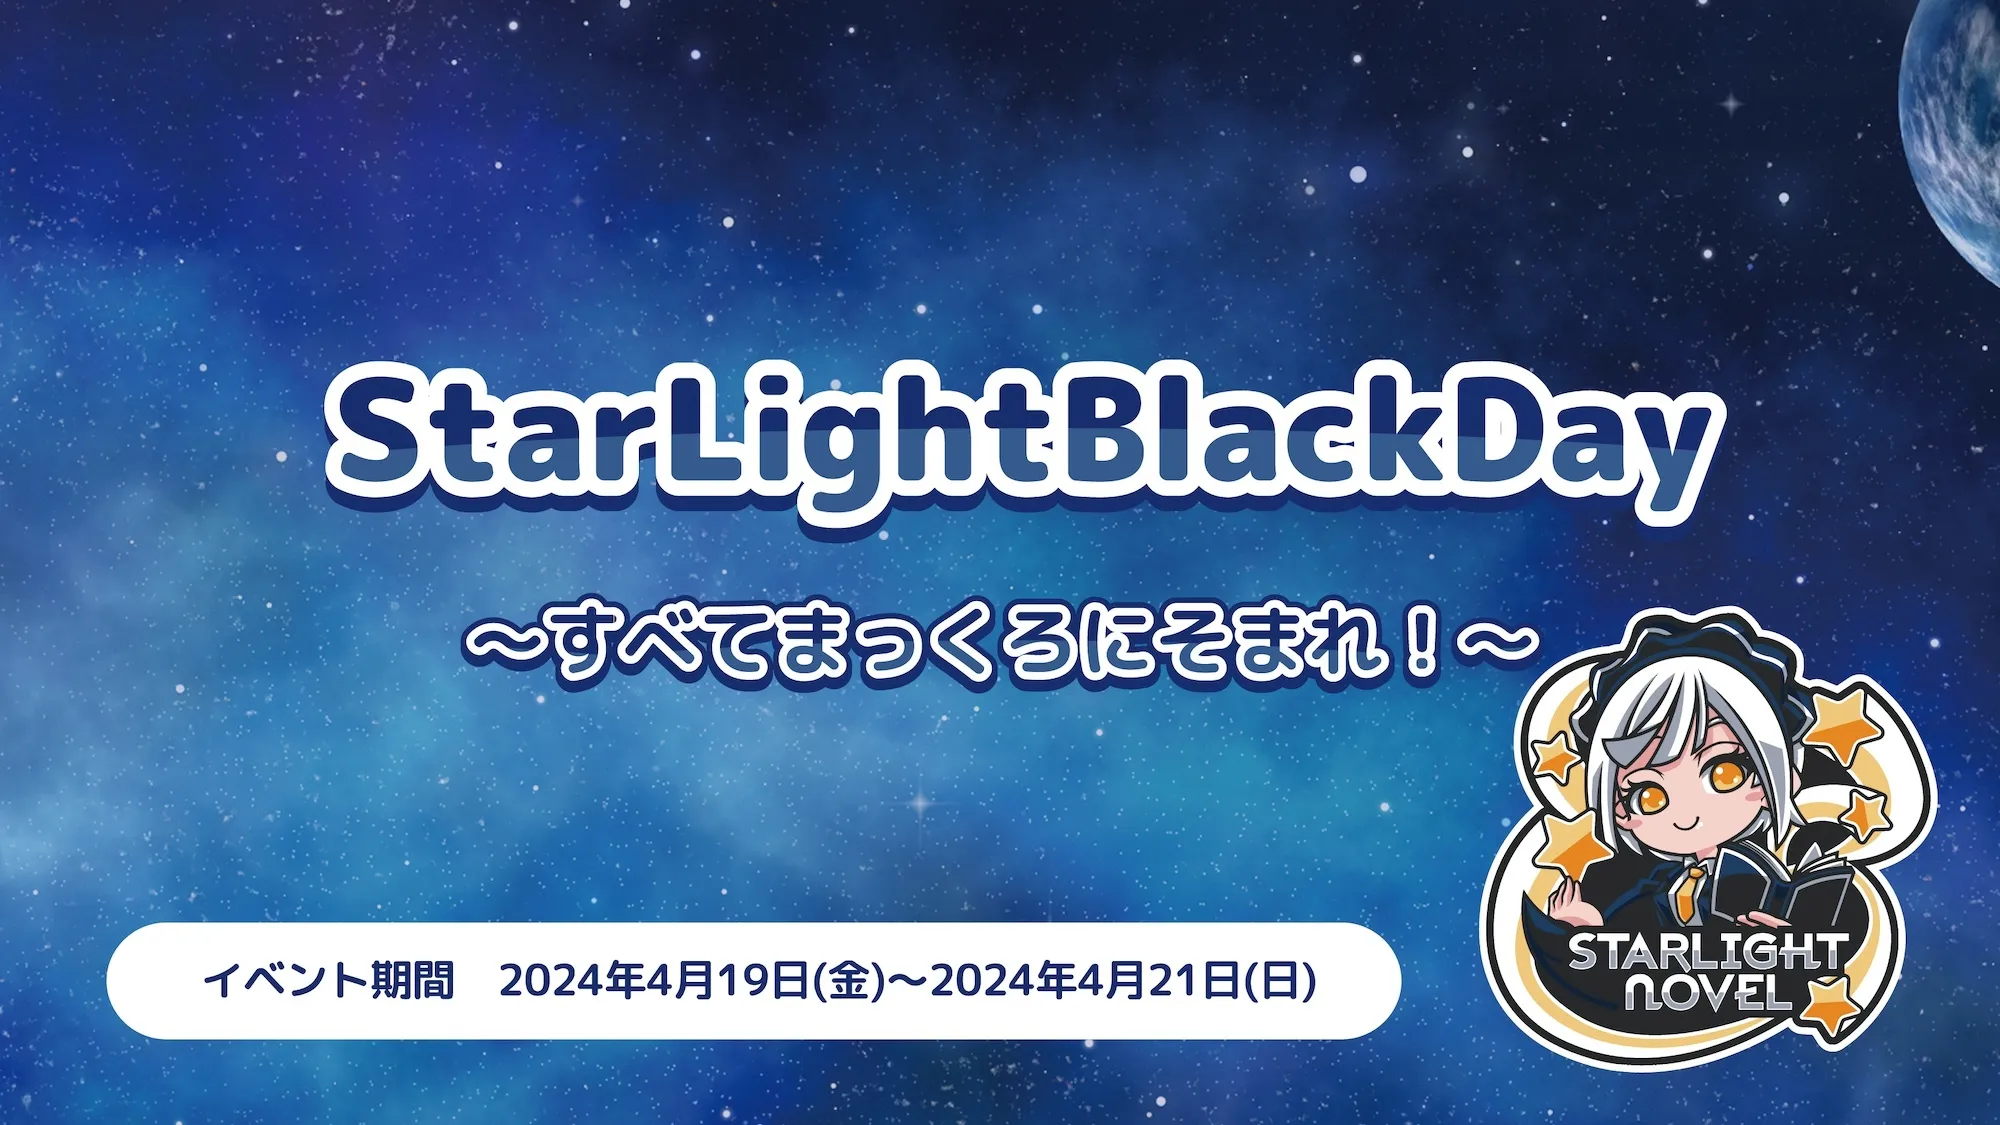 StarLightBlackDay  　- すべてまっくろにそまれ！ - スターライトノベル